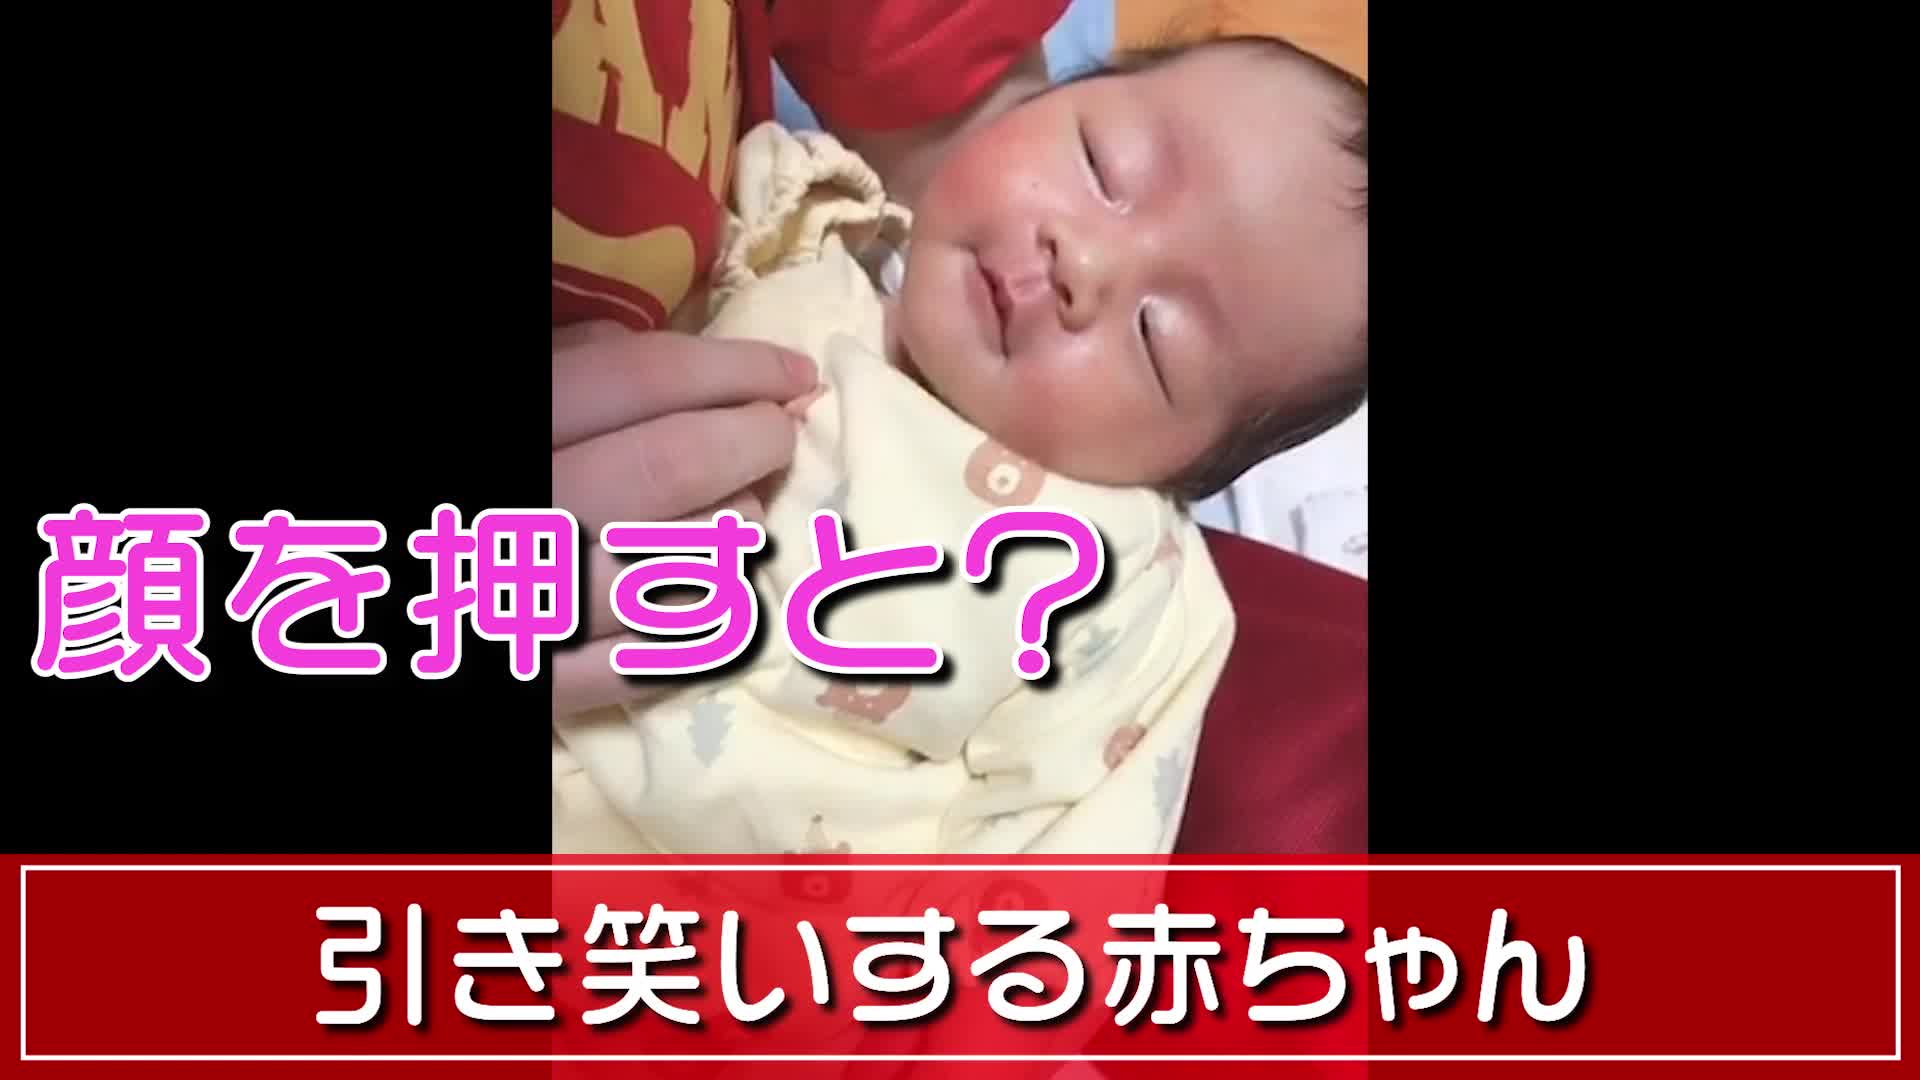 爆笑 引き笑いする赤ちゃん Videocash ビデオキャッシュ Yahoo Japan